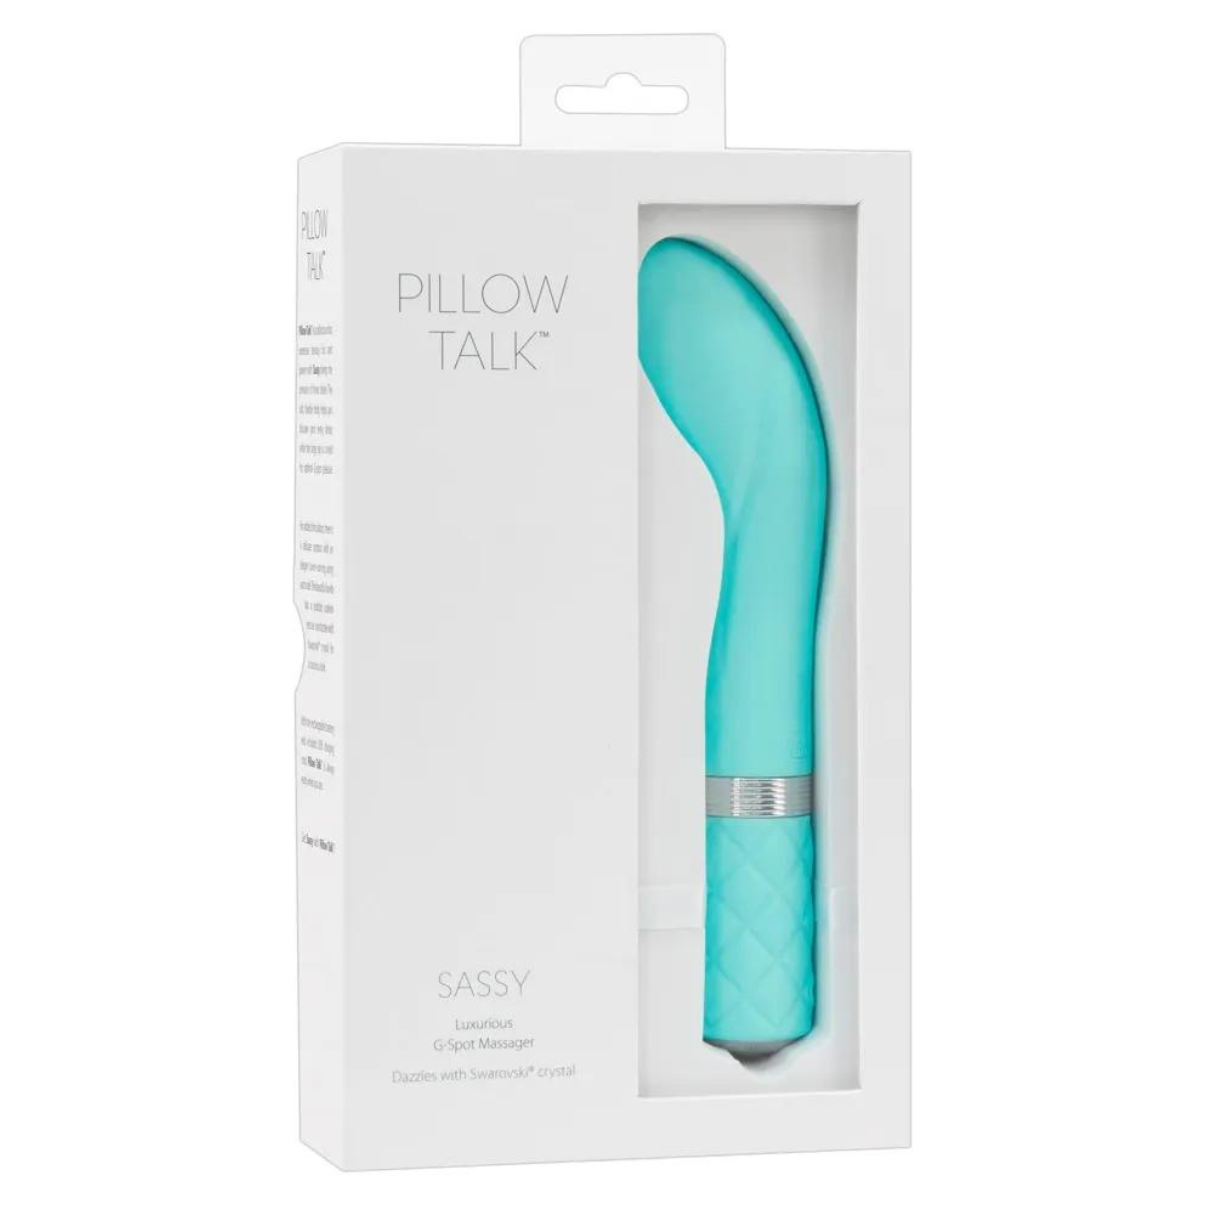 Pillow - PILLOW g-punkt-vibratoren Vibrator G-Punkt - Talk Sassy Teal TALK